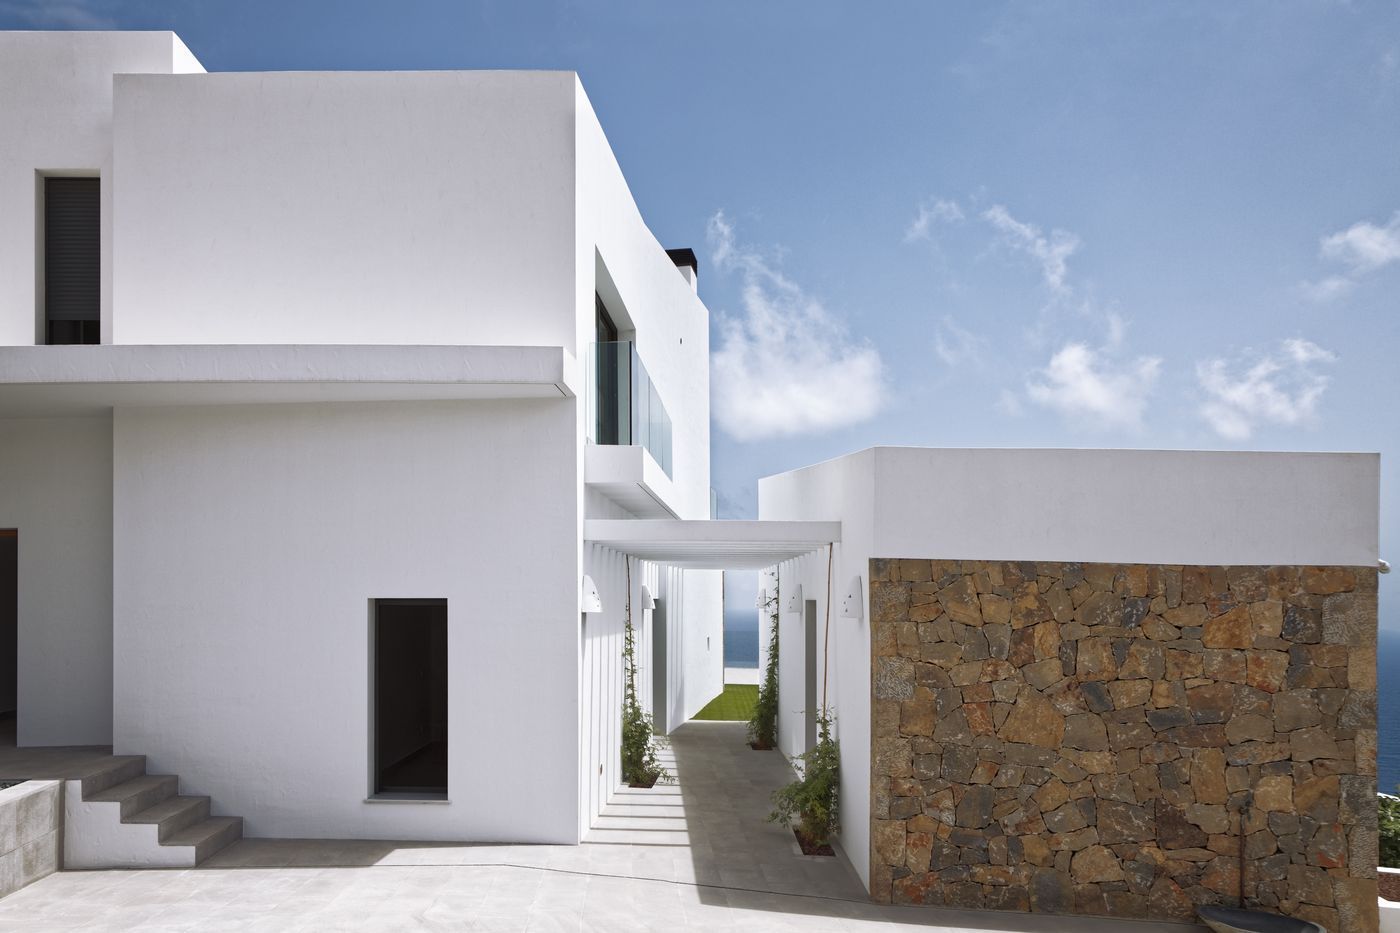 Luxus Meerblick Villa zum Verkauf in Javea